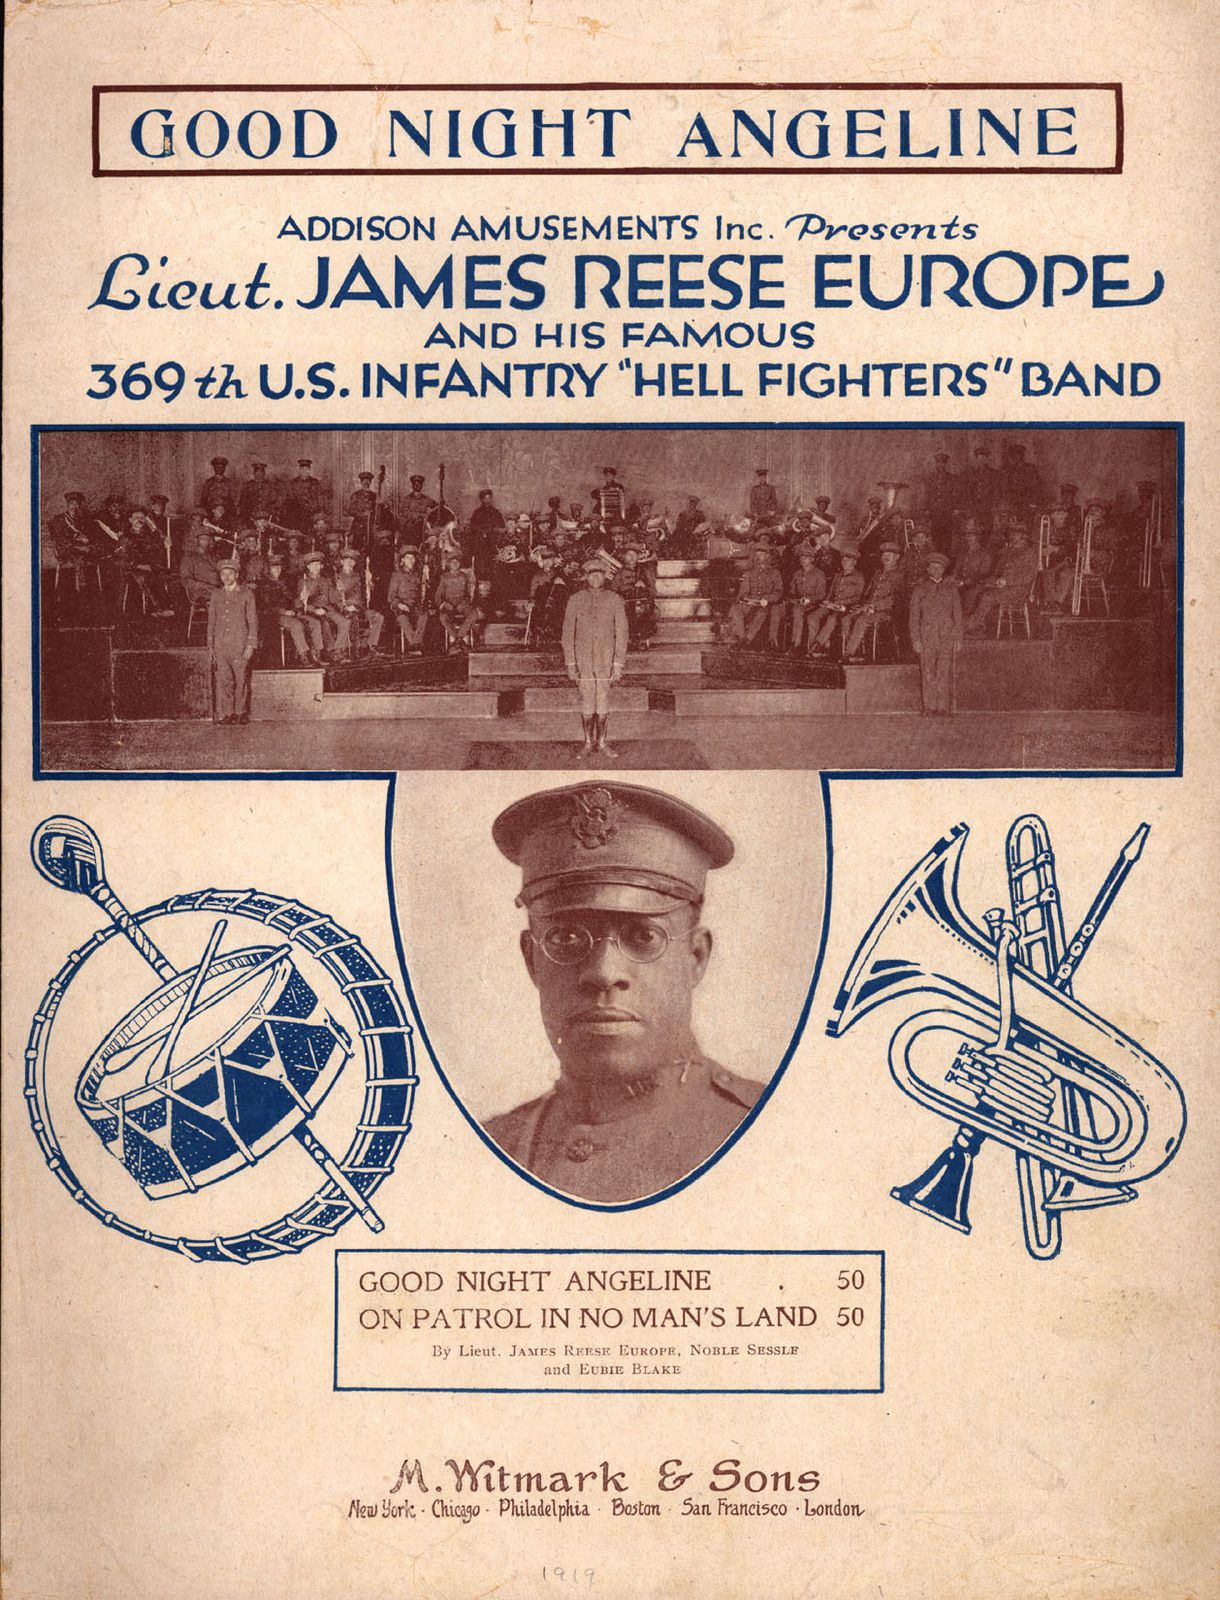 Affiche de propagande américaine valorisant l'action de James Reese Europe, chef d'orchestre et dirigeant les mitrailleuses au sein des "Harlem Hellfighters" (1917-1918)